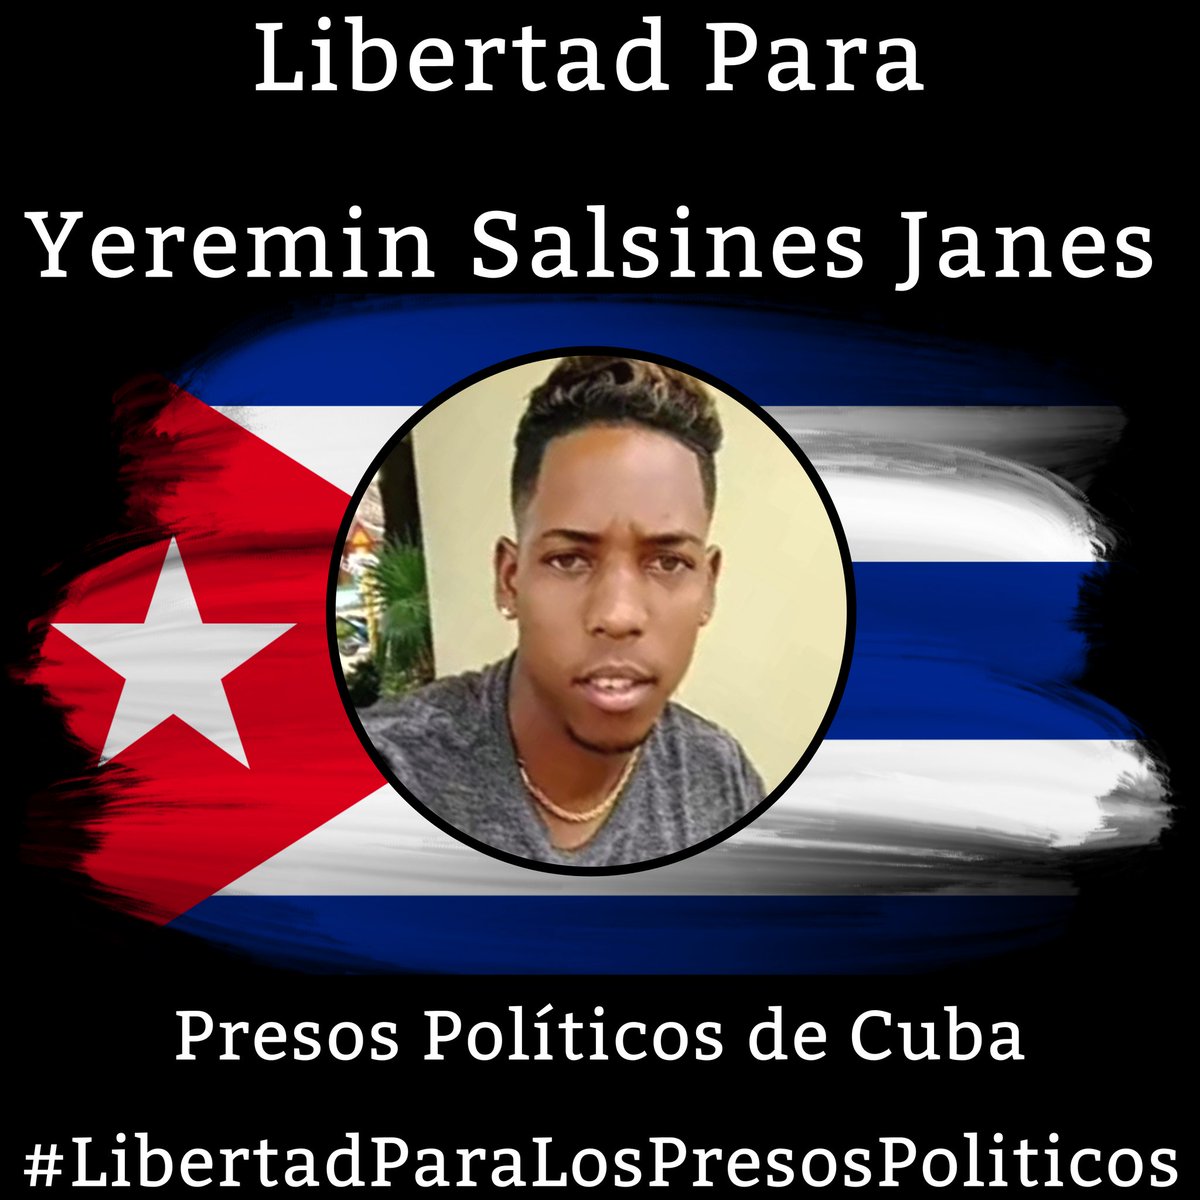 #Twittazo Libertad para Yeremin Salsines Janes.
.
“Sin aire, la tierra muere. Sin libertad, como sin aire propio y esencial, nada vive.” -José Martí-
.

.
.
#HastaQueSeanLibres 
#PresosPoliticosDeCuba
#LibertadYJusticiaParaCuba